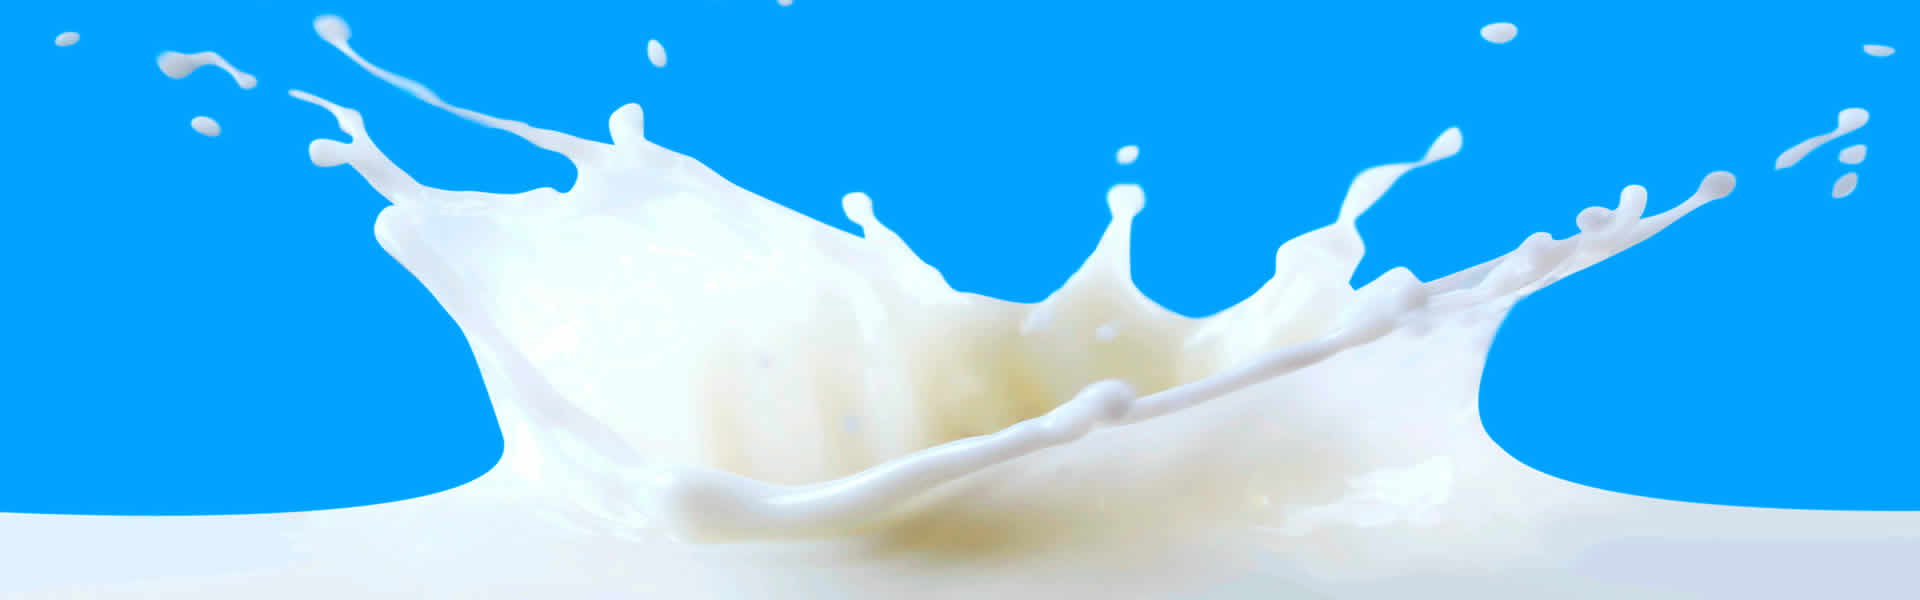 Doces de leite